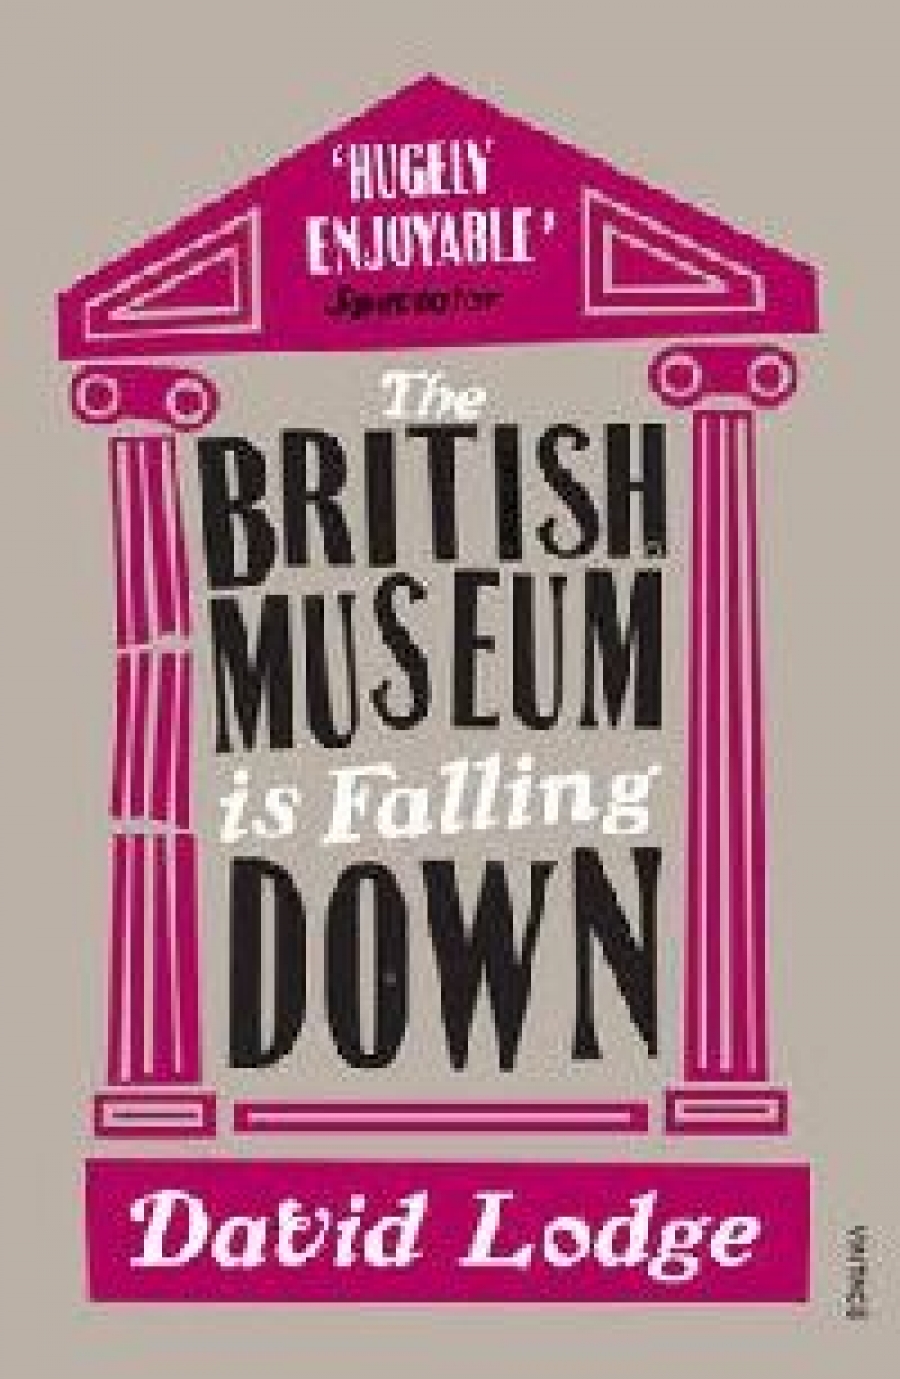 Lodge David British Museum is Falling Down (  ) 